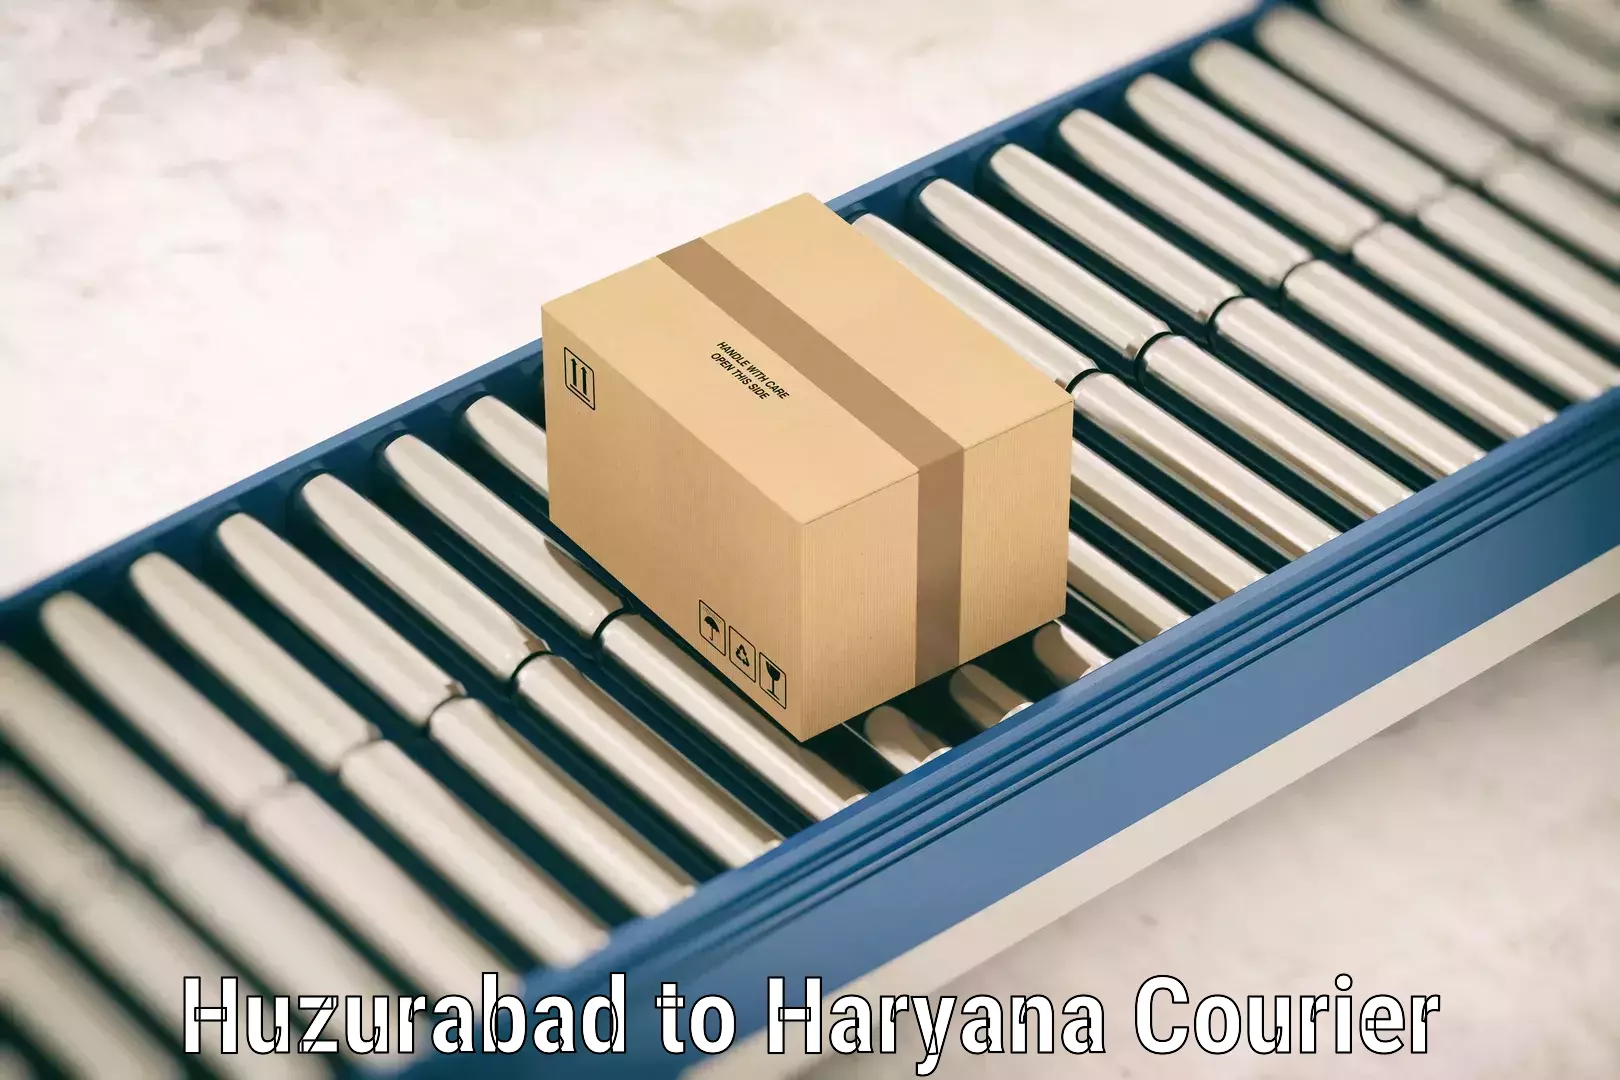 Luggage transport consultancy Huzurabad to Chirya